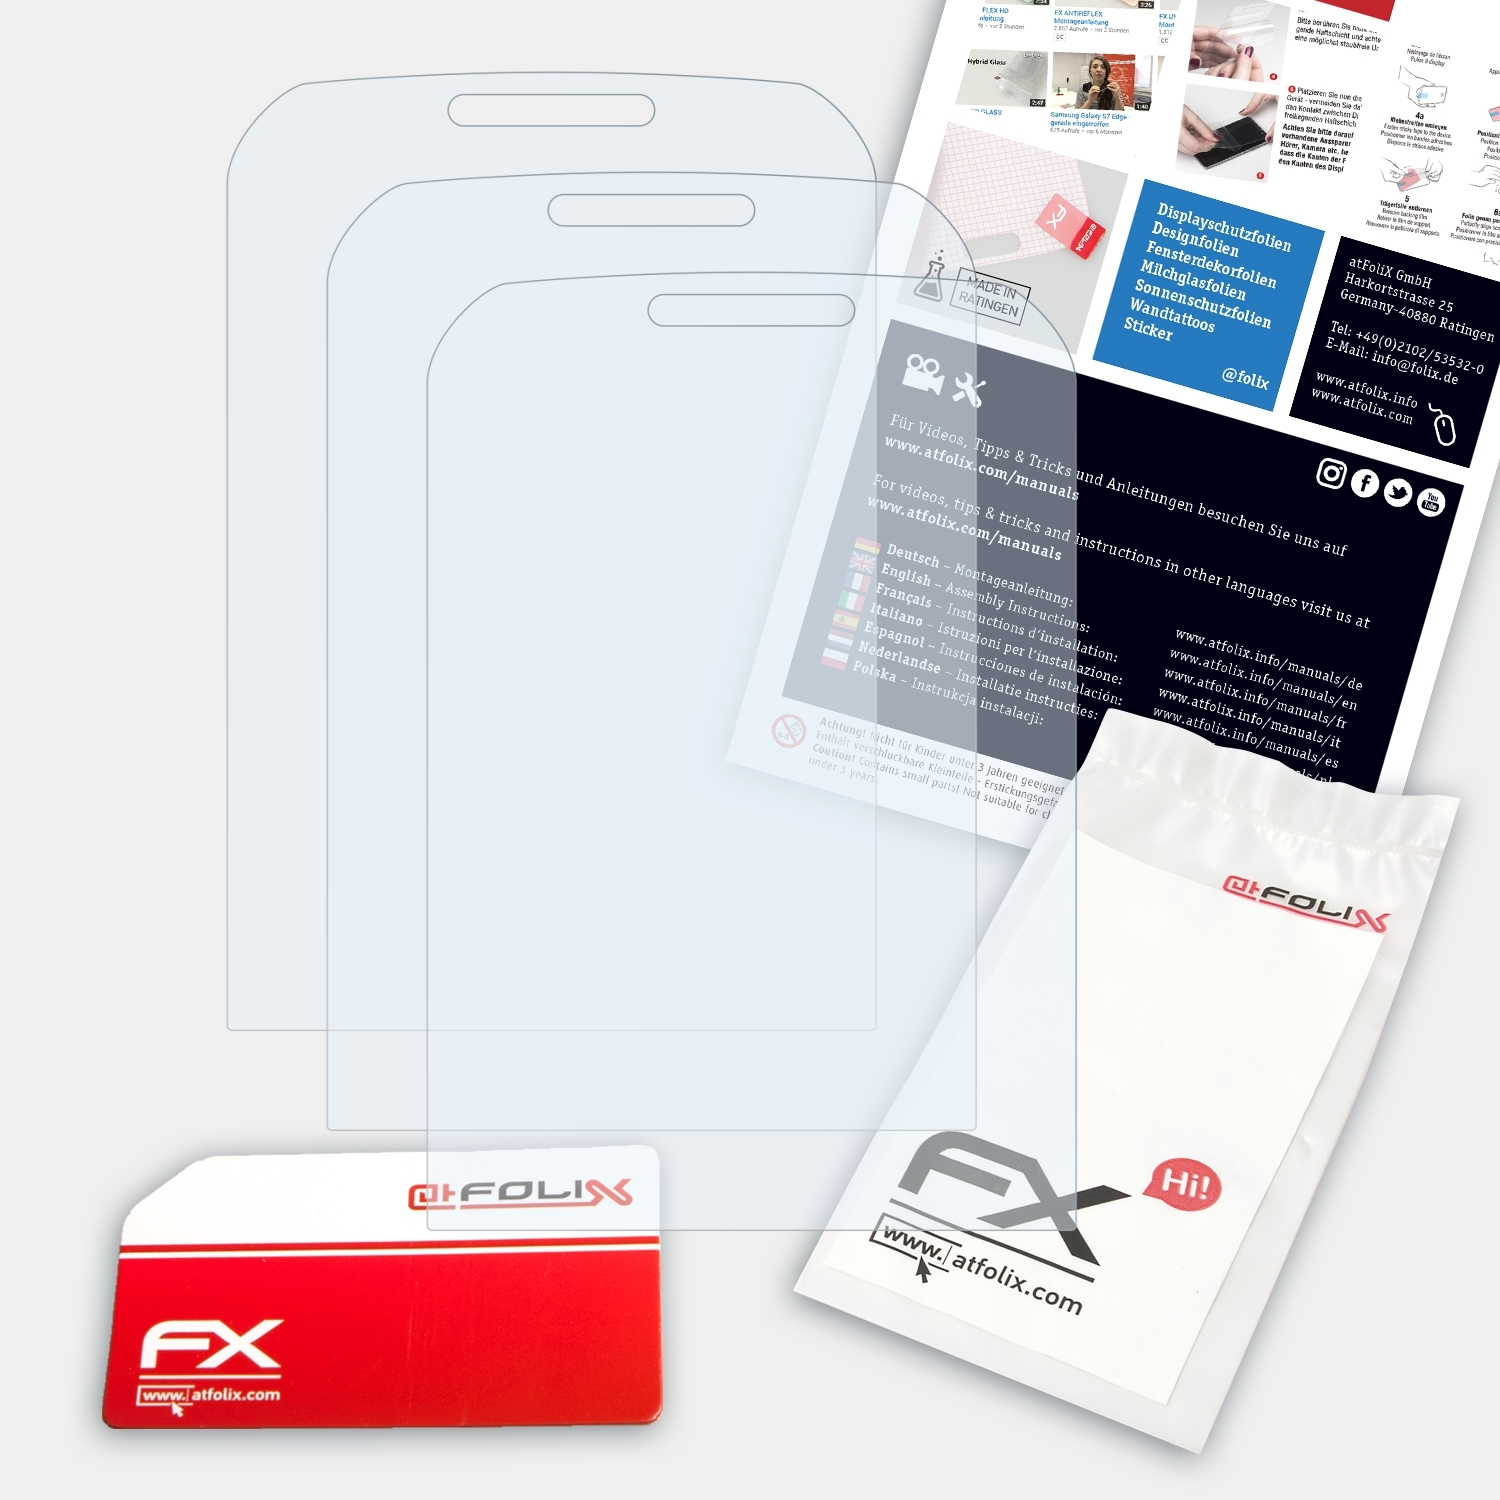 550) ATFOLIX FX-Clear Samsung 3x Xcover Displayschutz(für